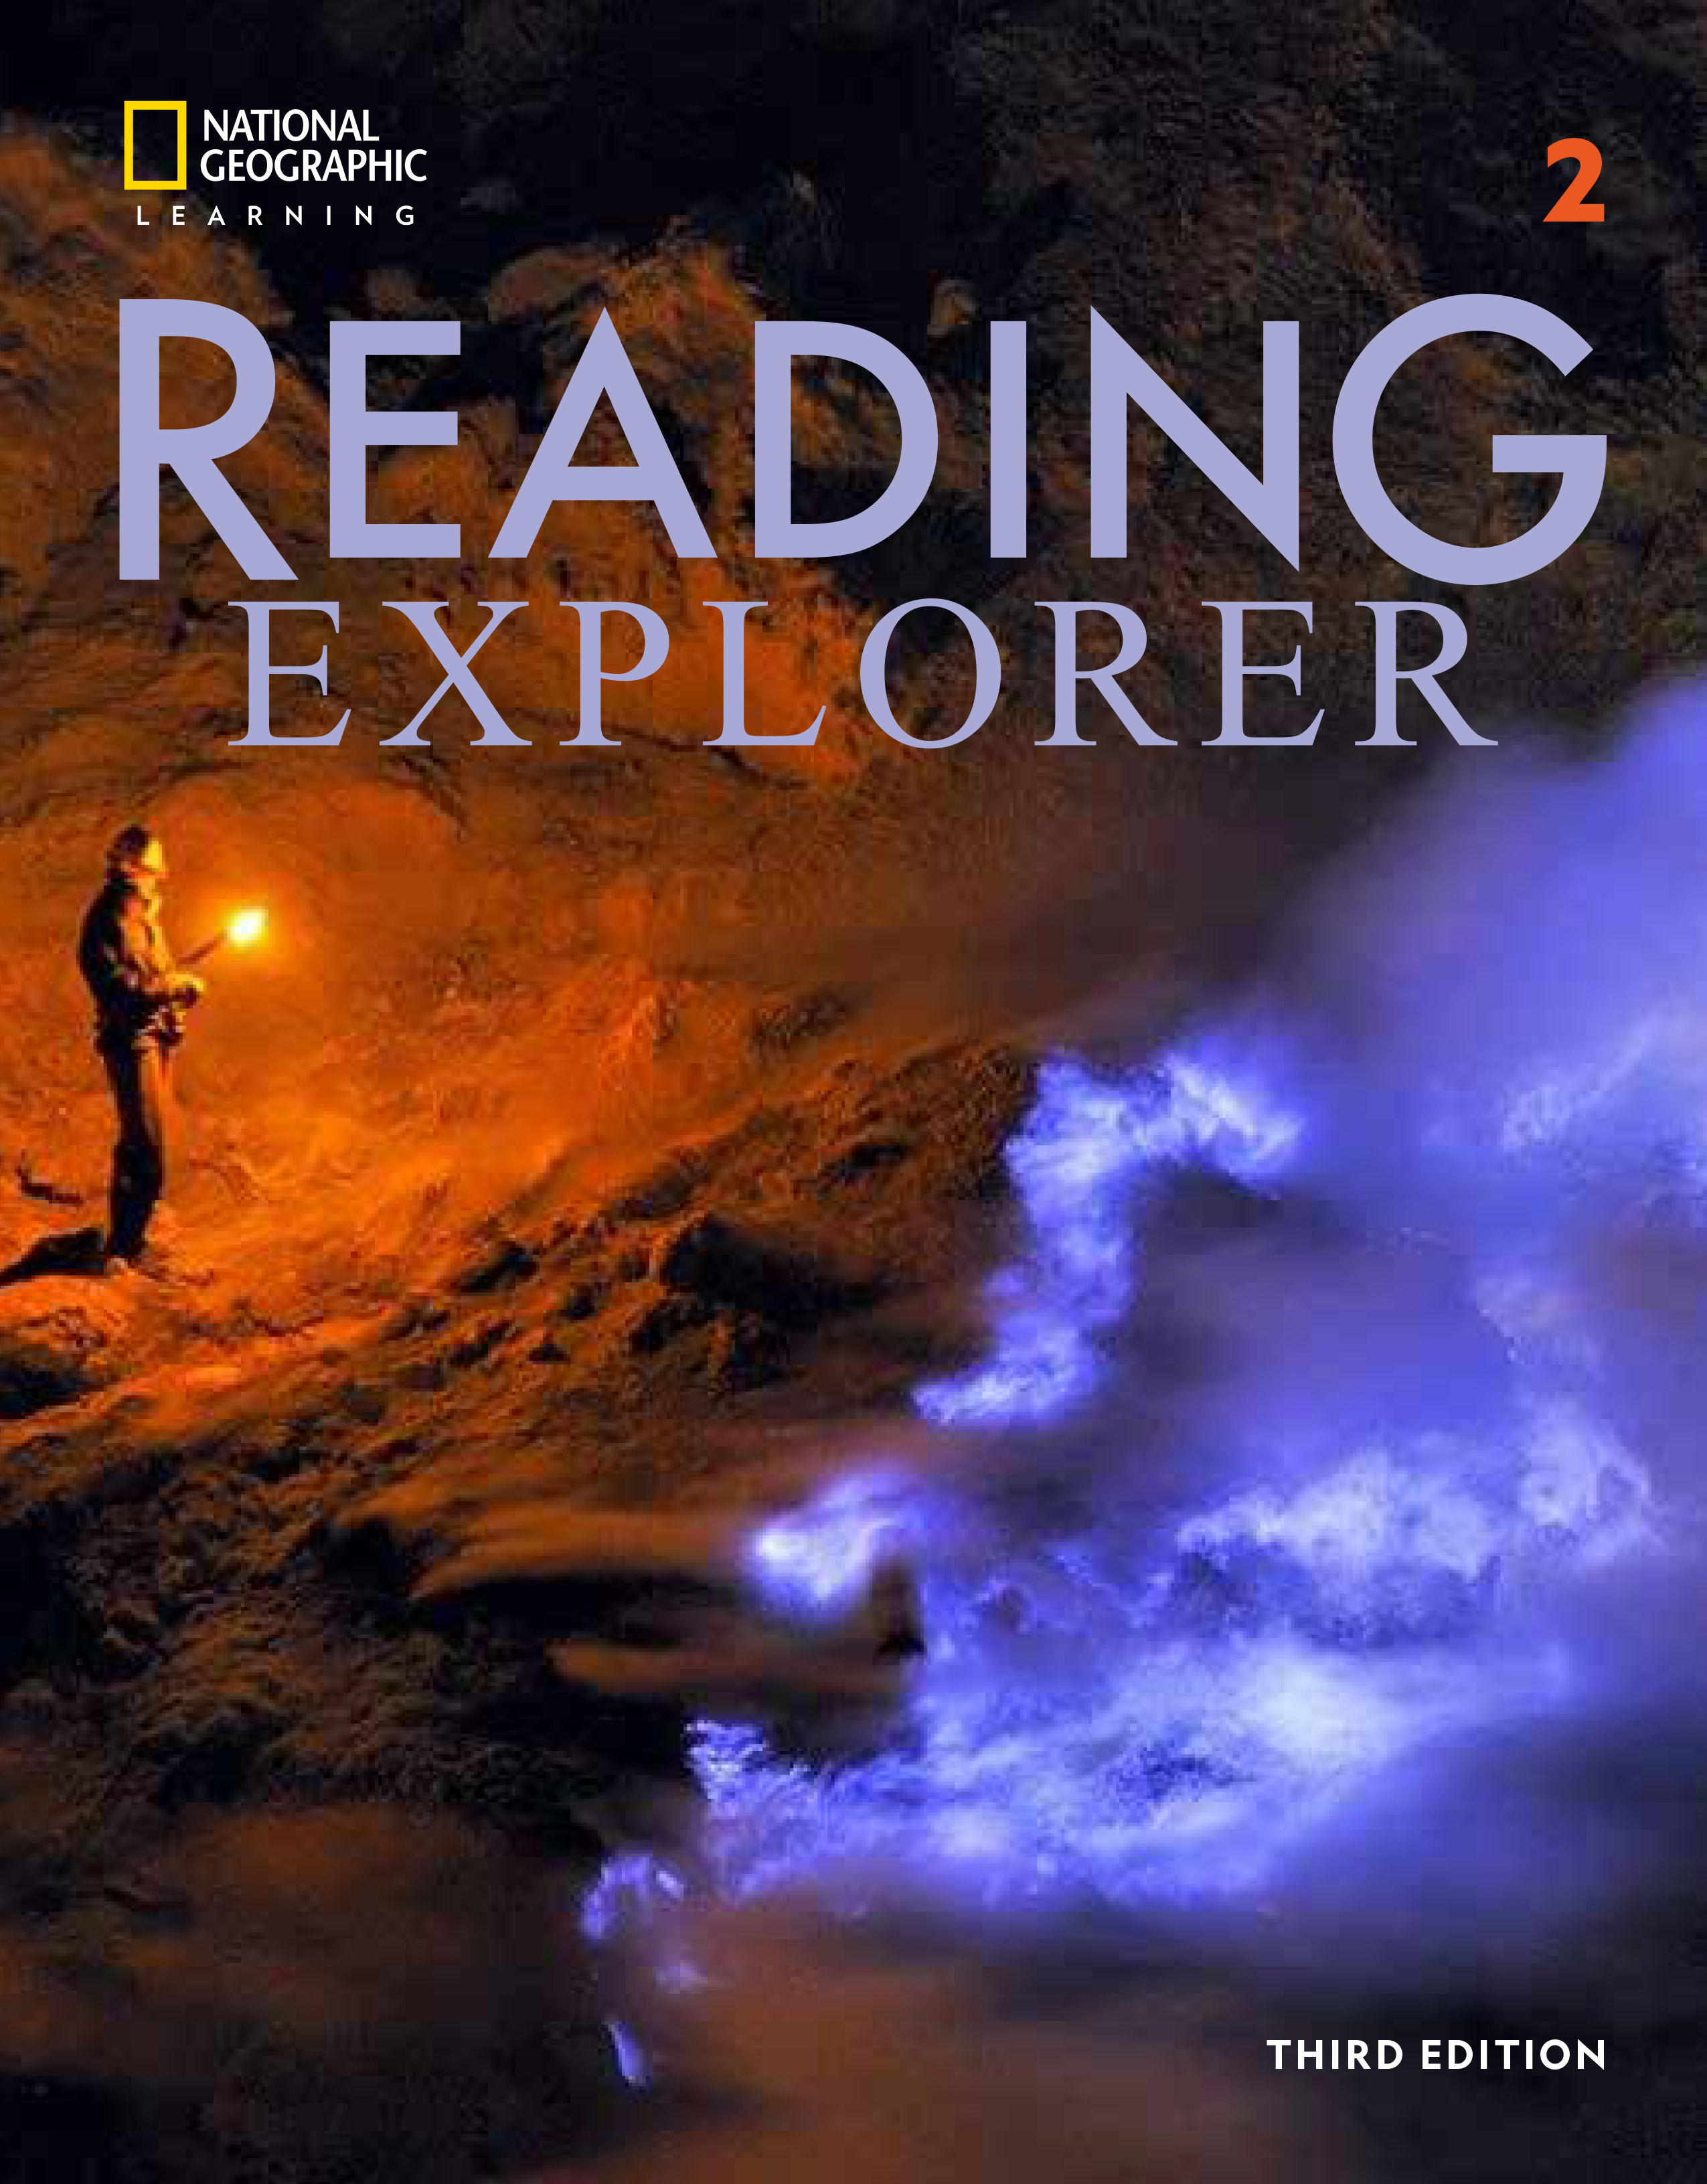 Reading explorer 3/E 2 SB TEACHER GUIDE